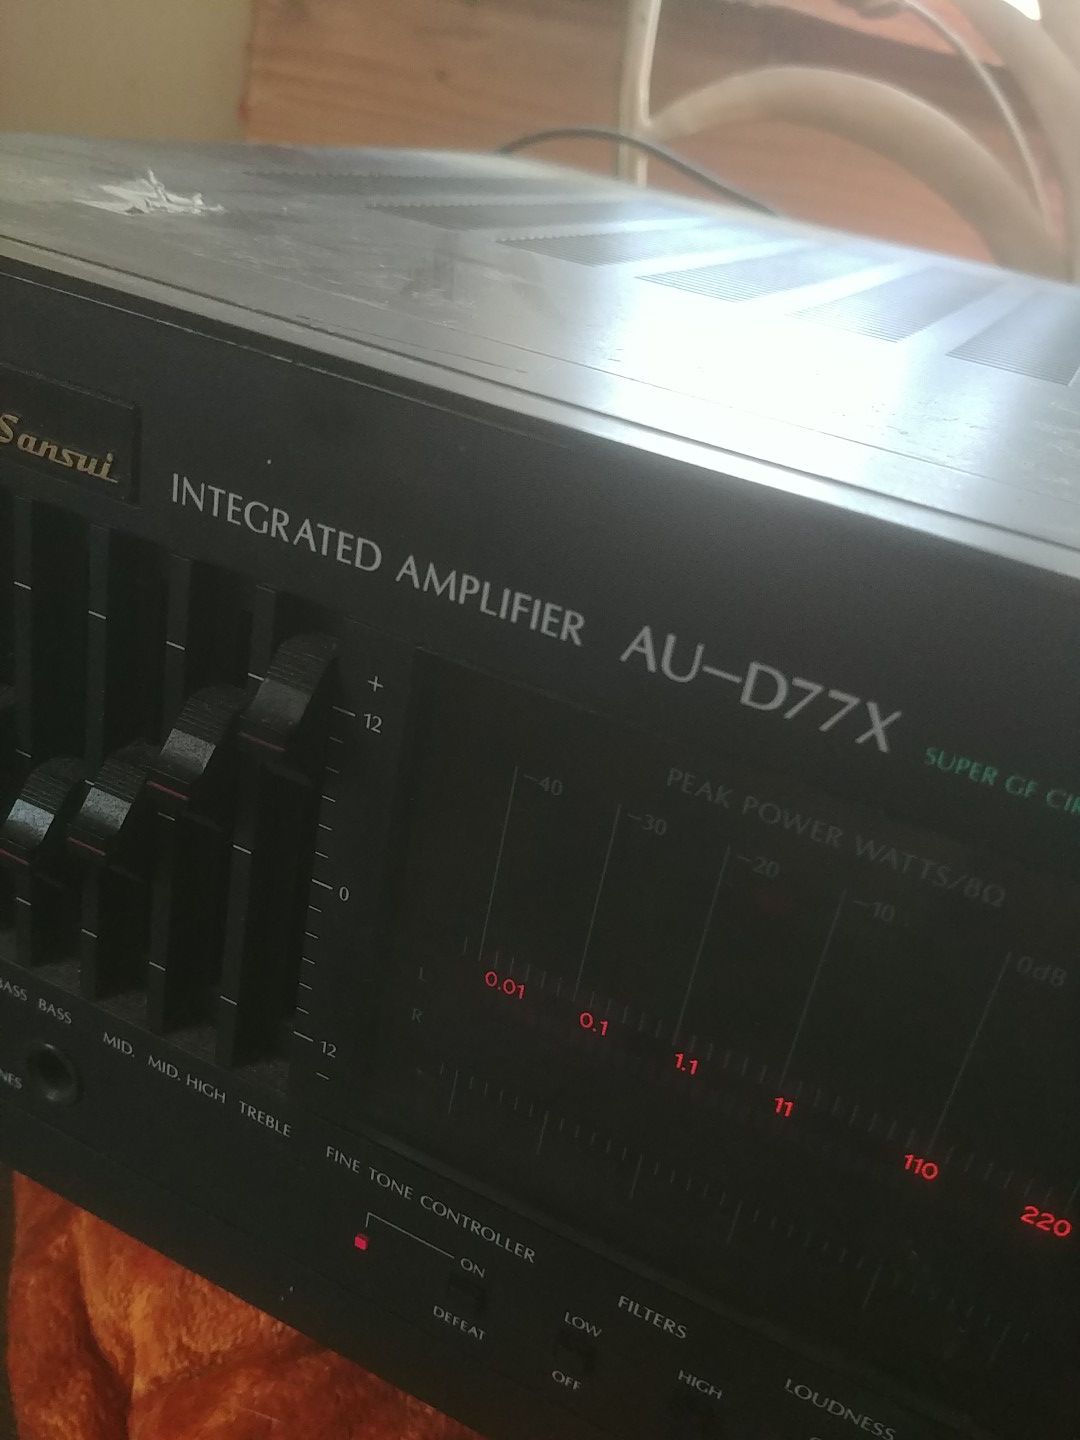 Sansui integrated amplifier AU-D77X